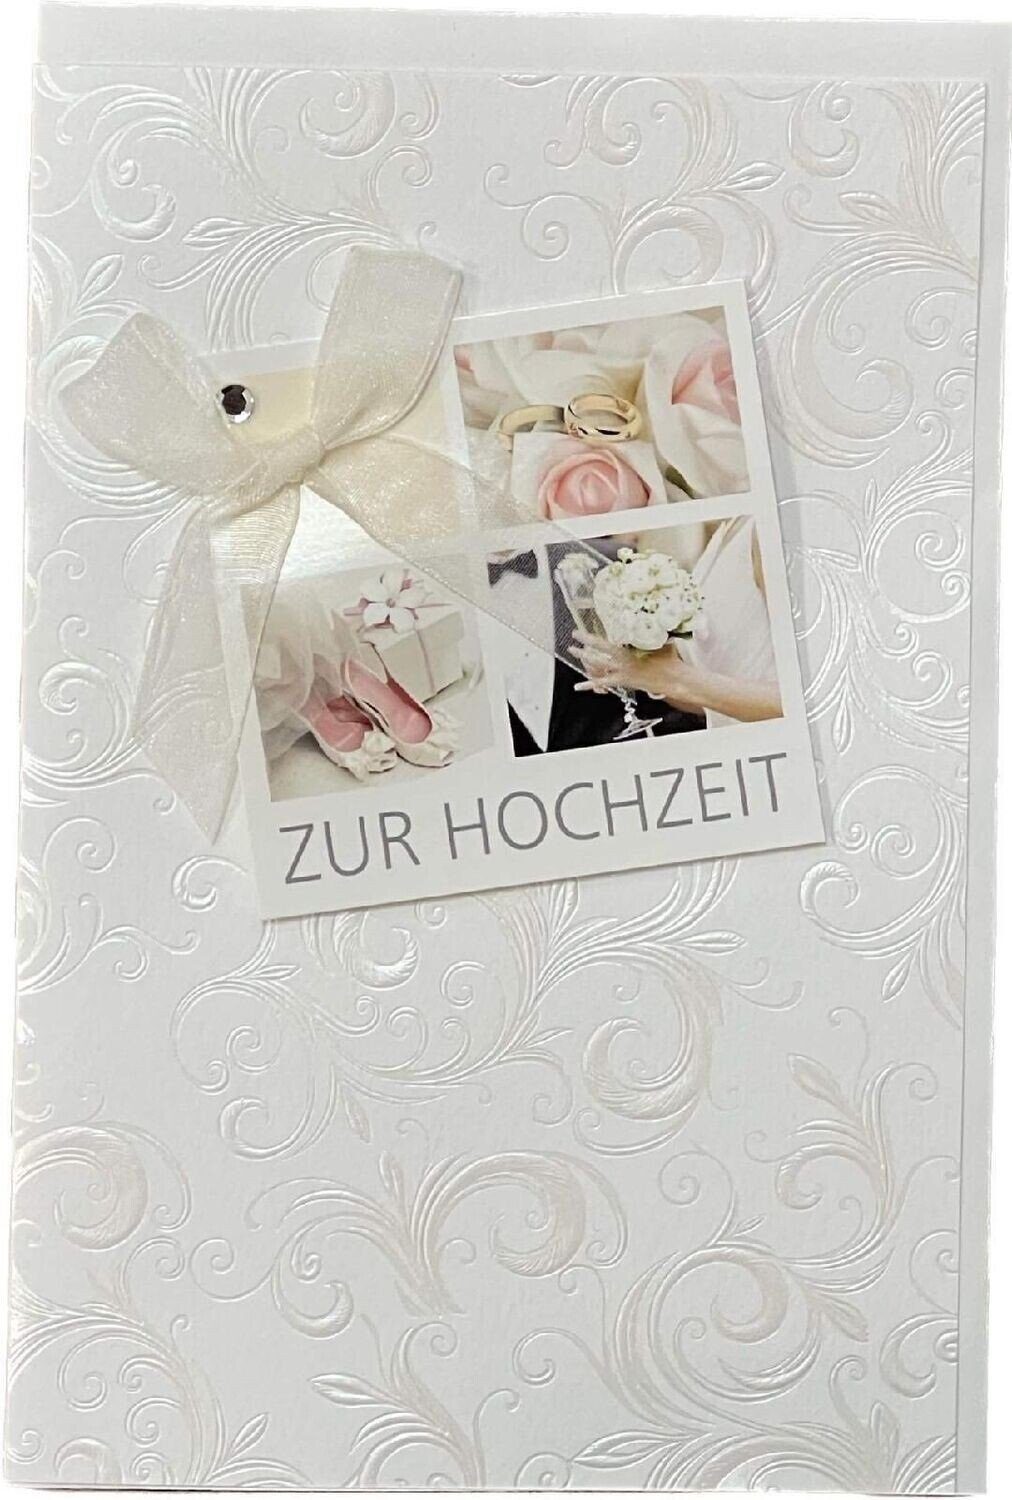 HOME FASHION Hochzeitskarte Hochzeitskarte, Zur Hochzeit - Grußkarte inklusive Umschlag